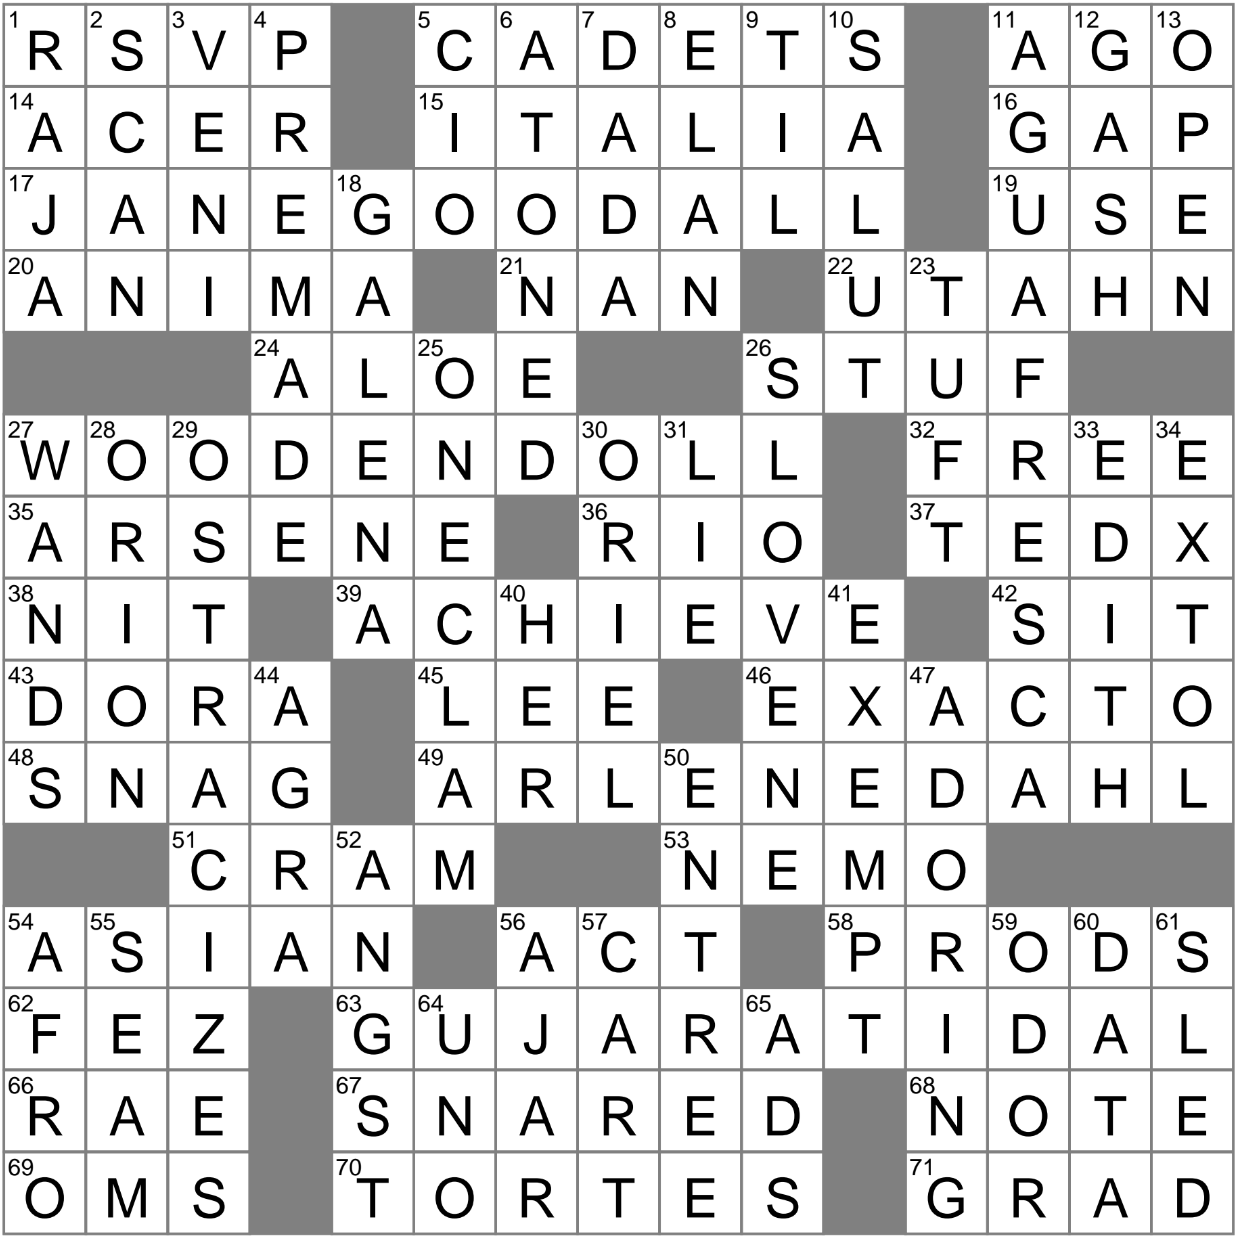 LA Times Crossword 13 Sep 23 Wednesday LAXCrossword com